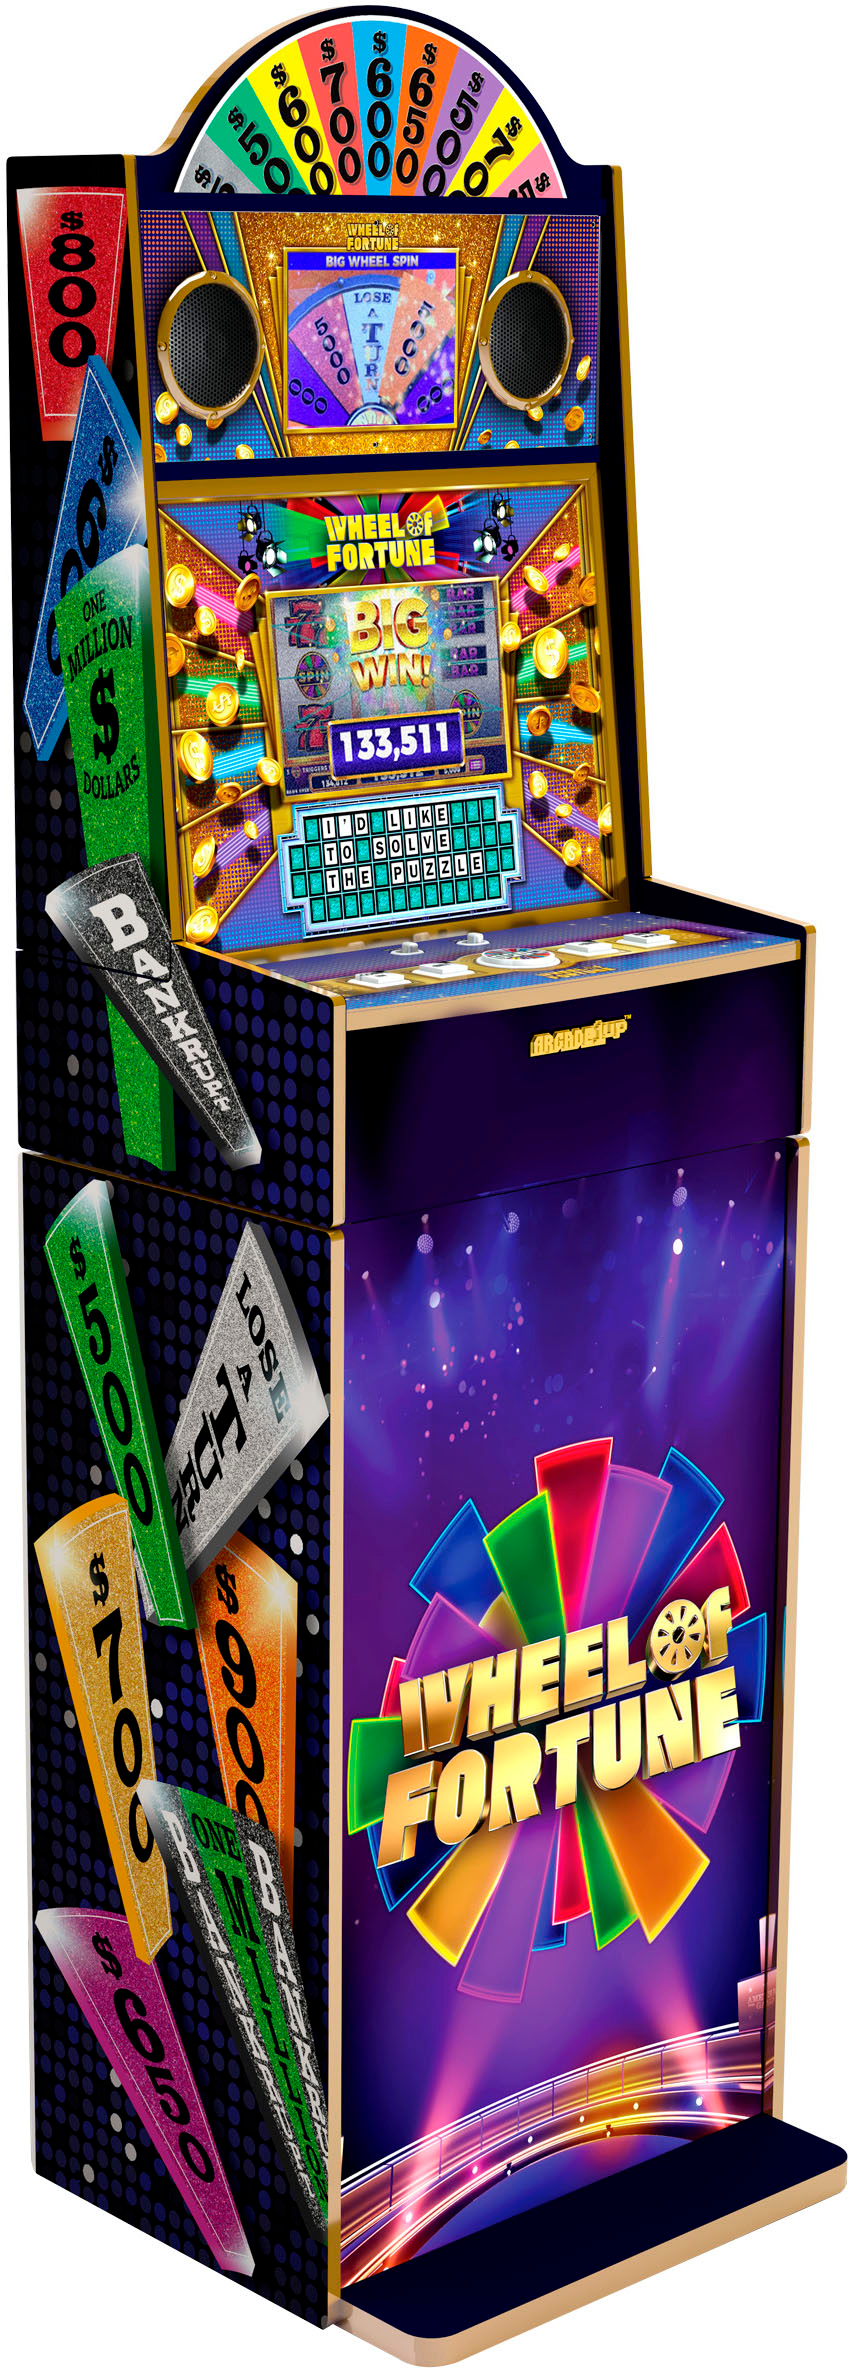 Arcade1Up - Wheel of Fortune Casinocade Deluxe Arcade Game @ Best Buy for $499.99